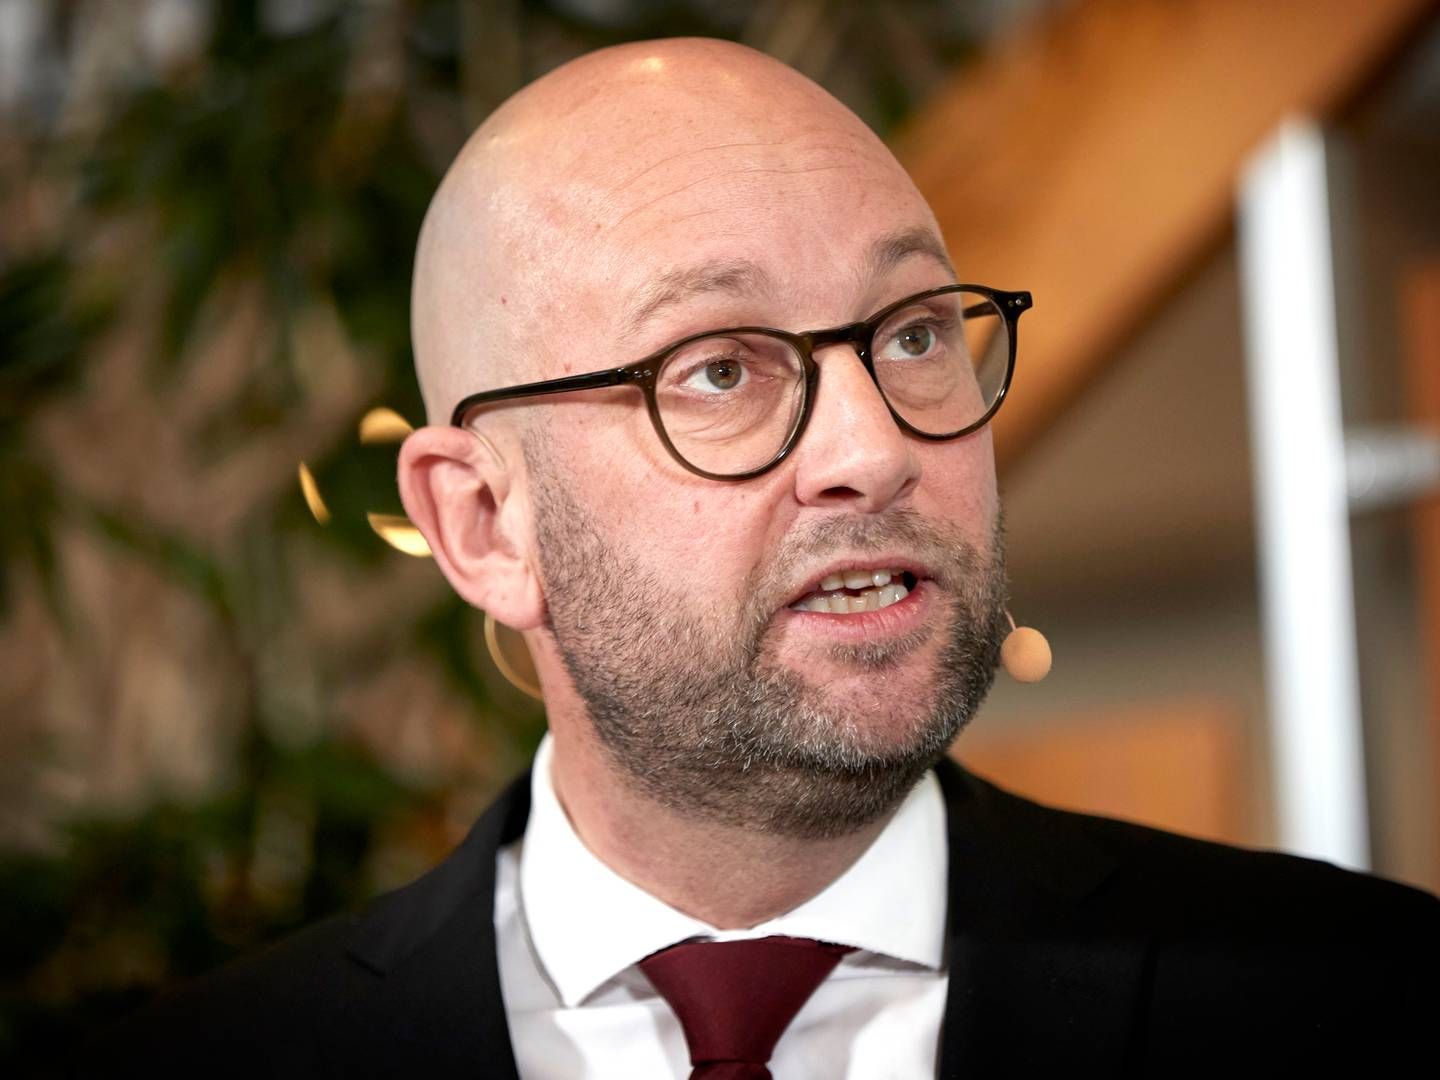 Den socialdemokratiske formand for Folketingets transportudvalg, Rasmus Prehn, er klar til at se på, om den kilometerbaserede vejafgift kan justeres. | Foto: Jens Dresling/Ritzau Scanpix